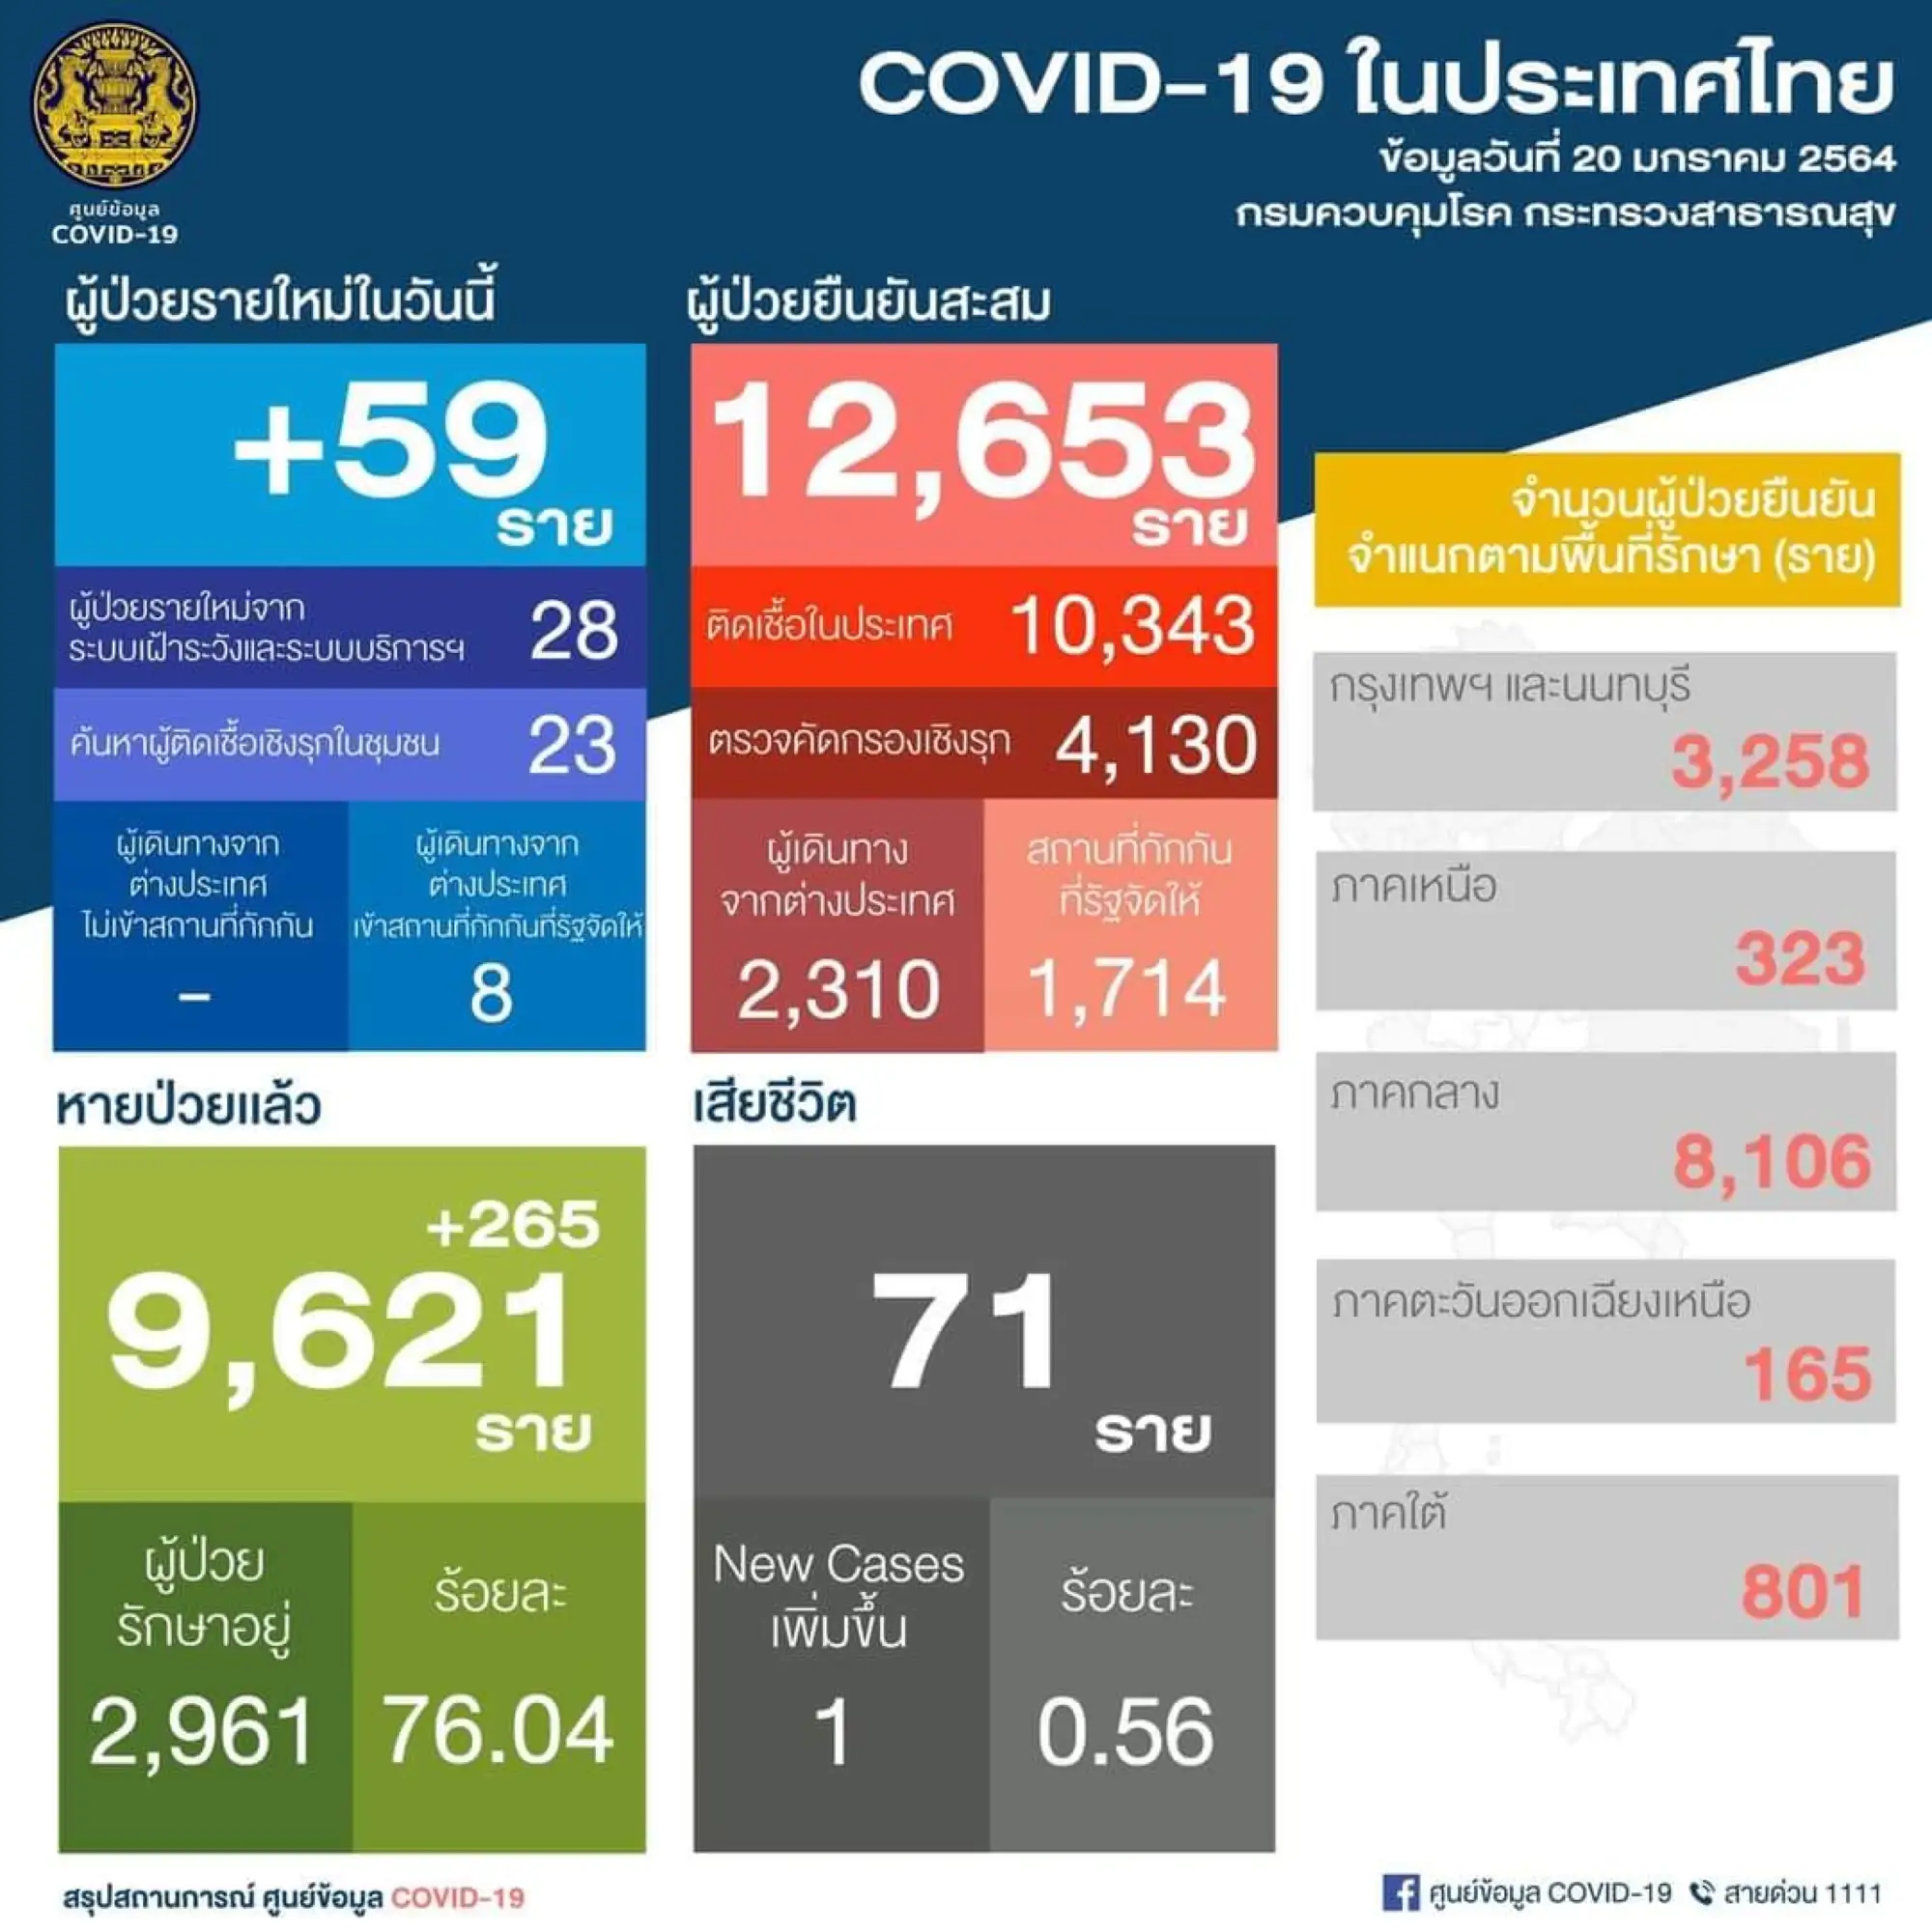 泰国疫情20日新增59例 （图片来源：PR Thai Government 脸书粉丝专页）